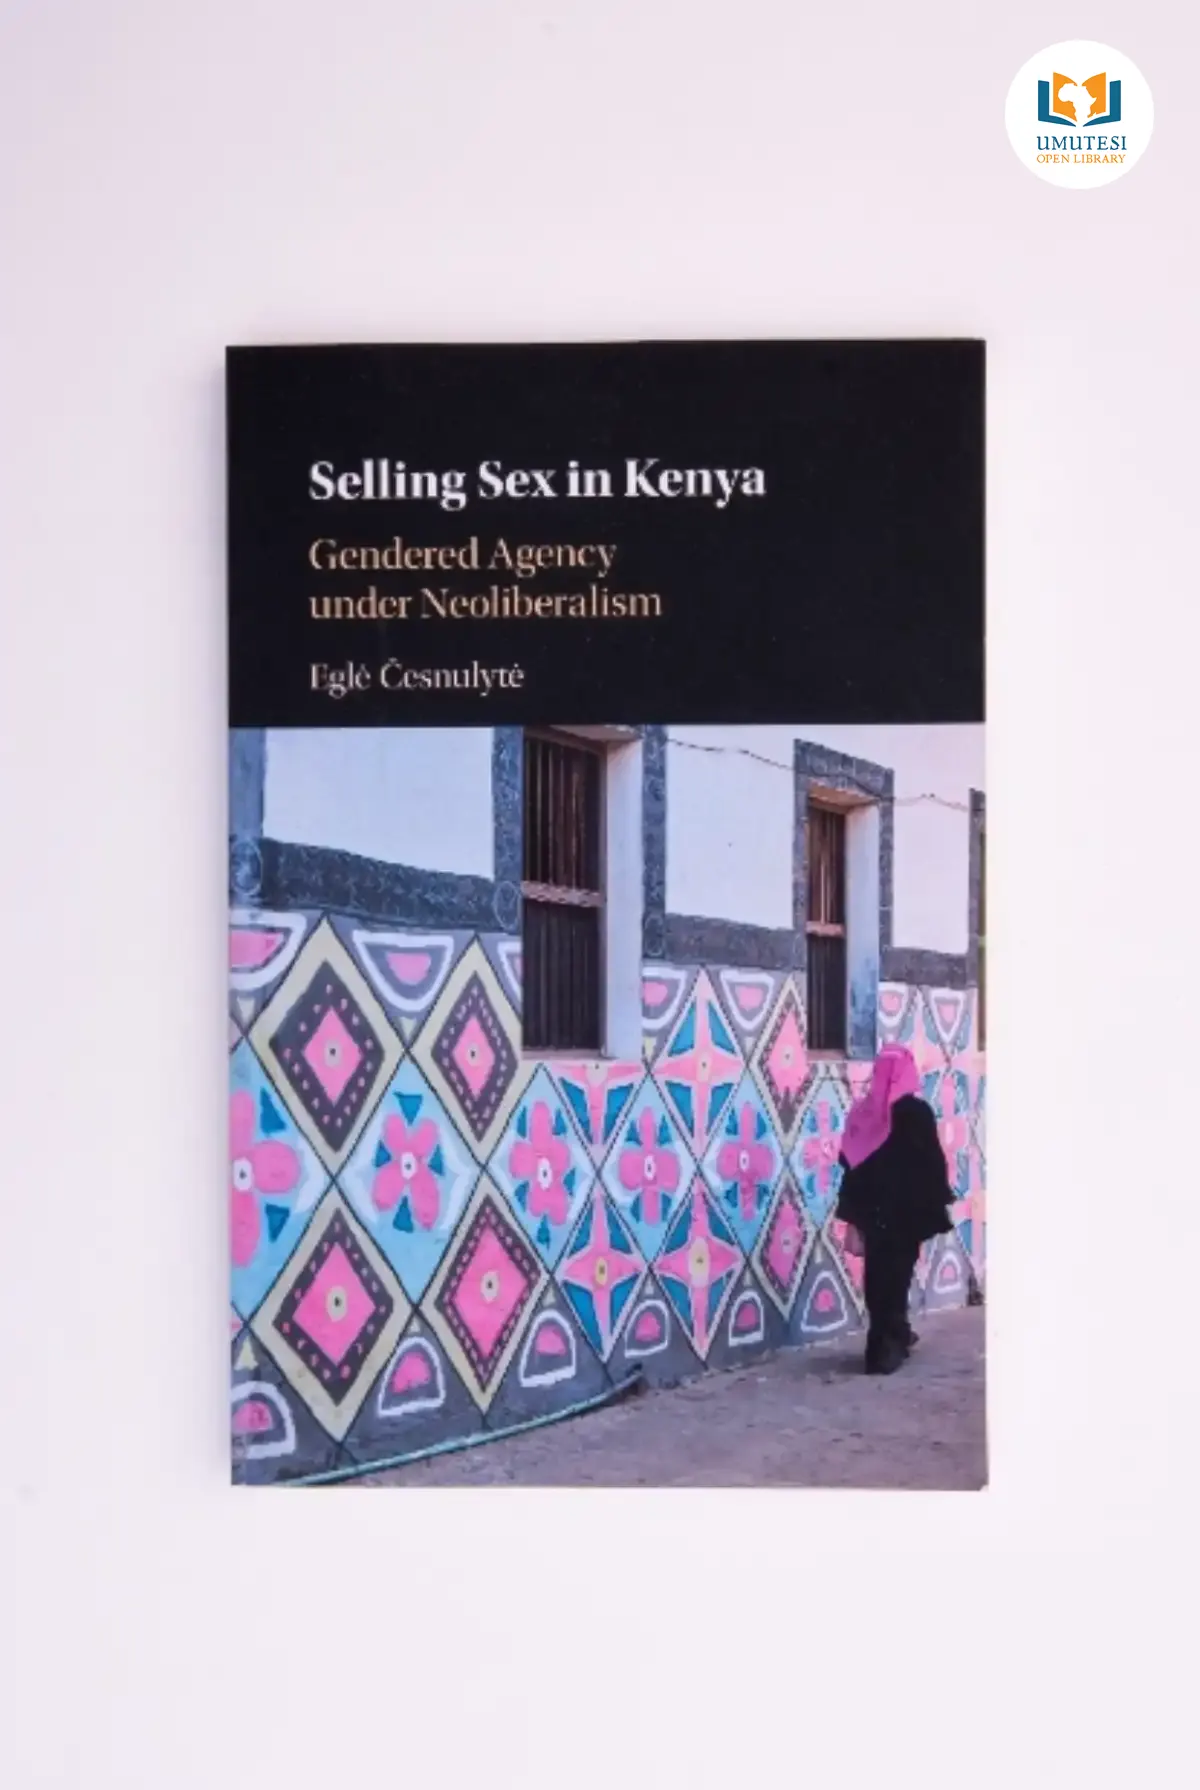 Selling Sex in Kenya: Gendered Agency Under Neoliberalism by Eglė Česnulytė